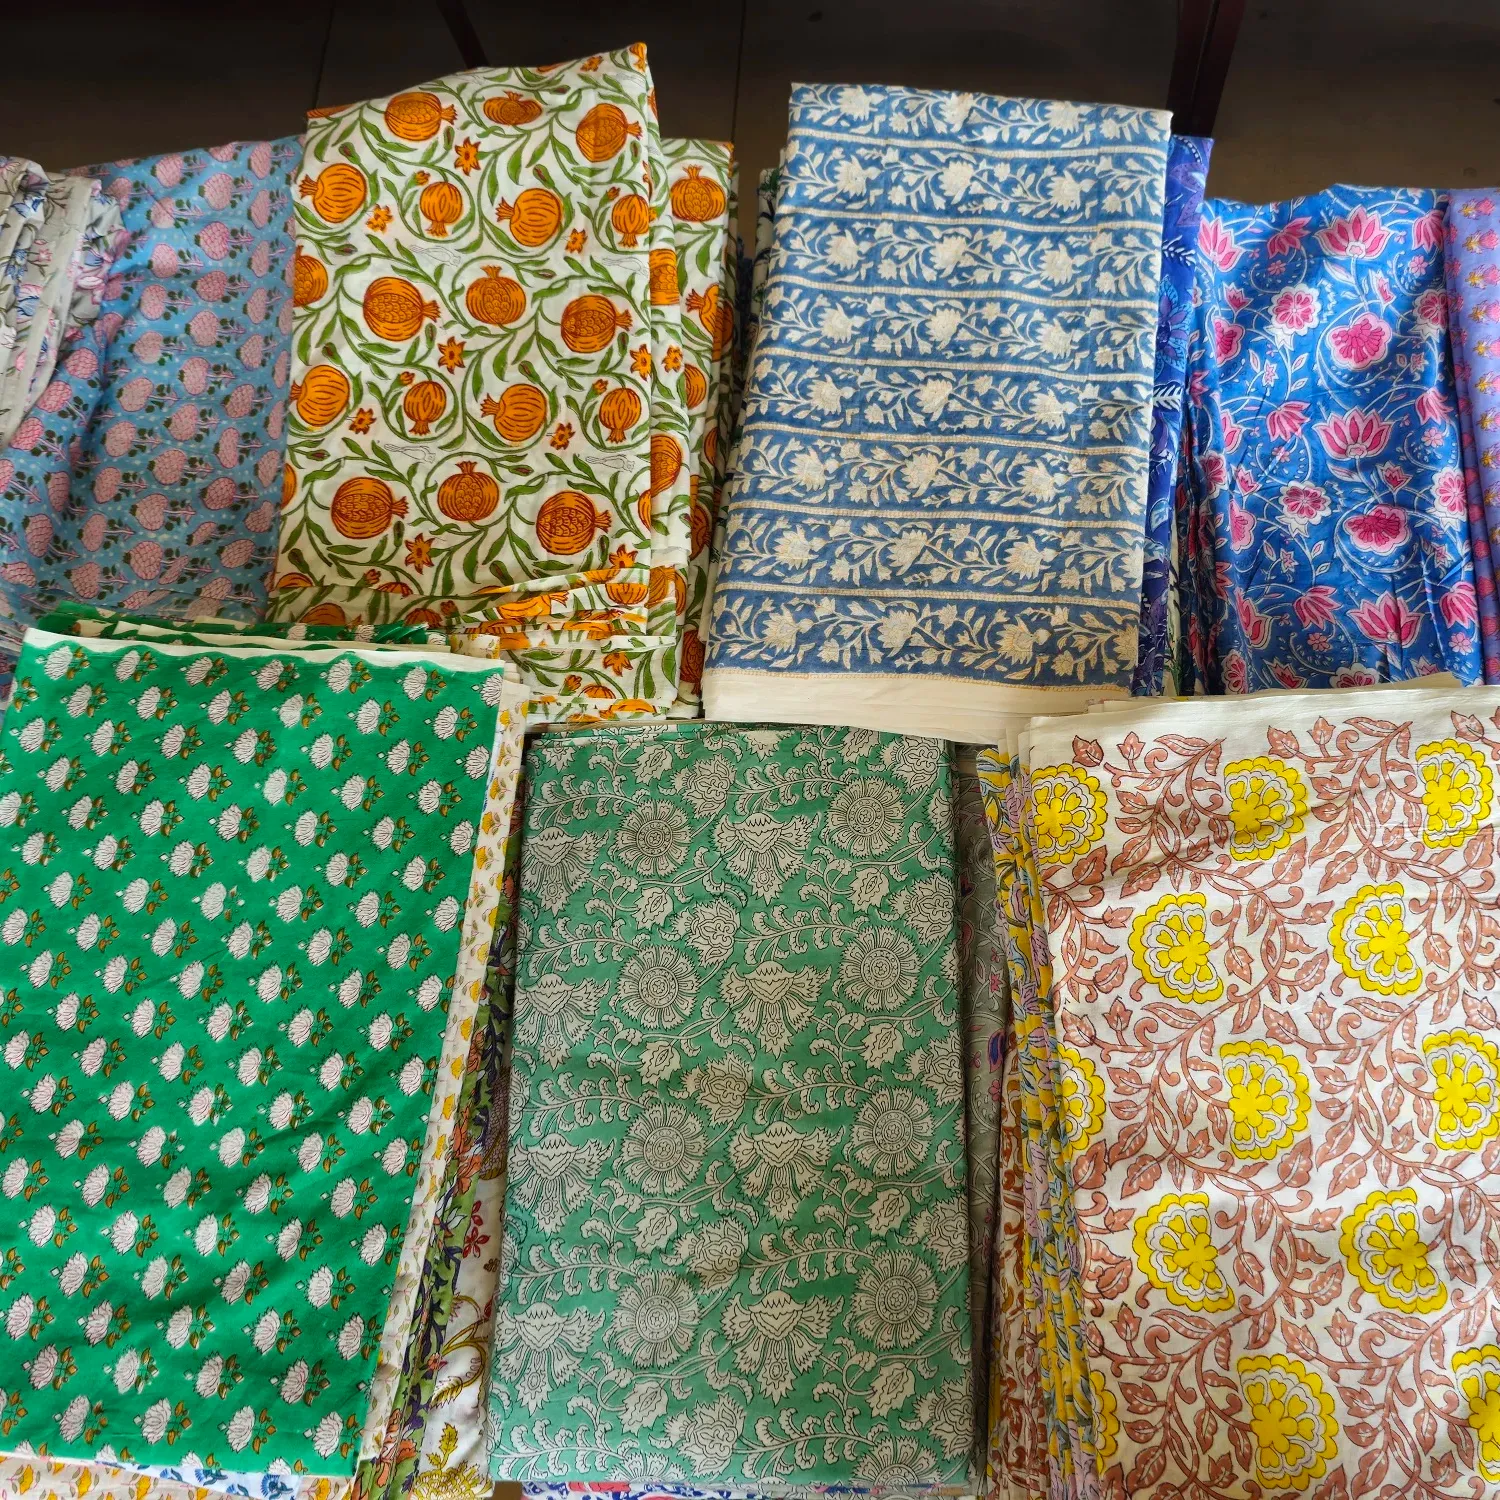 Ingrosso tessuto indiano fatto a mano in cotone Jaipur Sanganeri tessuto stampato materiale grezzo tessuto